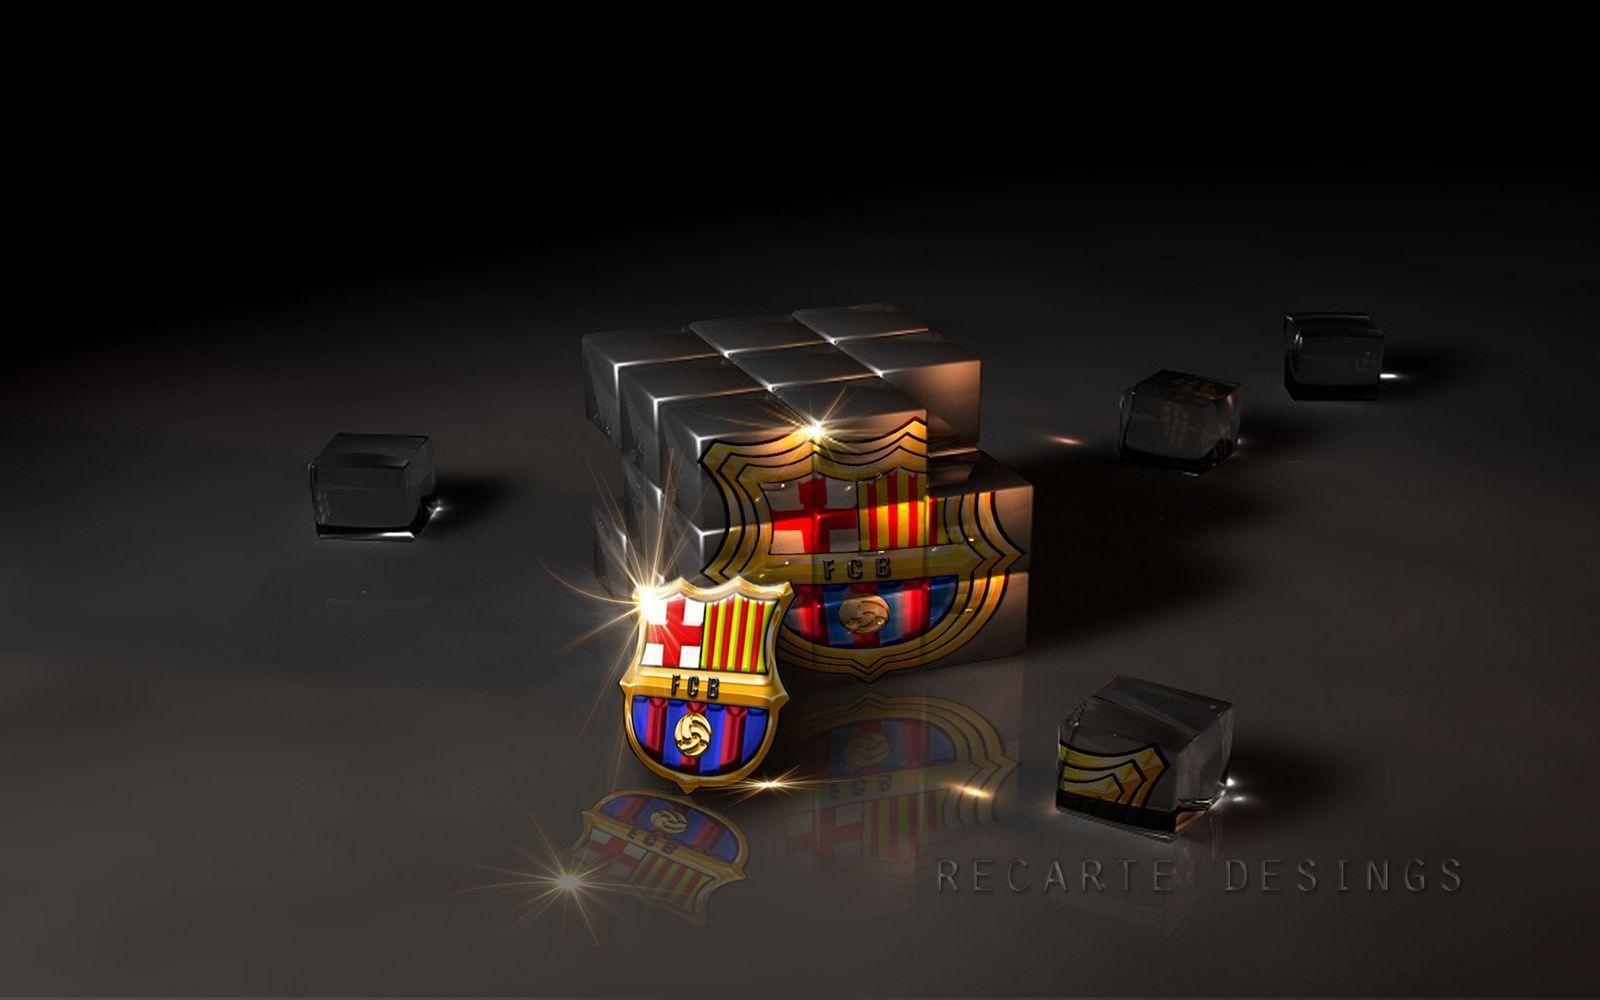 3D FC Barcelona Logo Wallpaper. Hdwidescreens